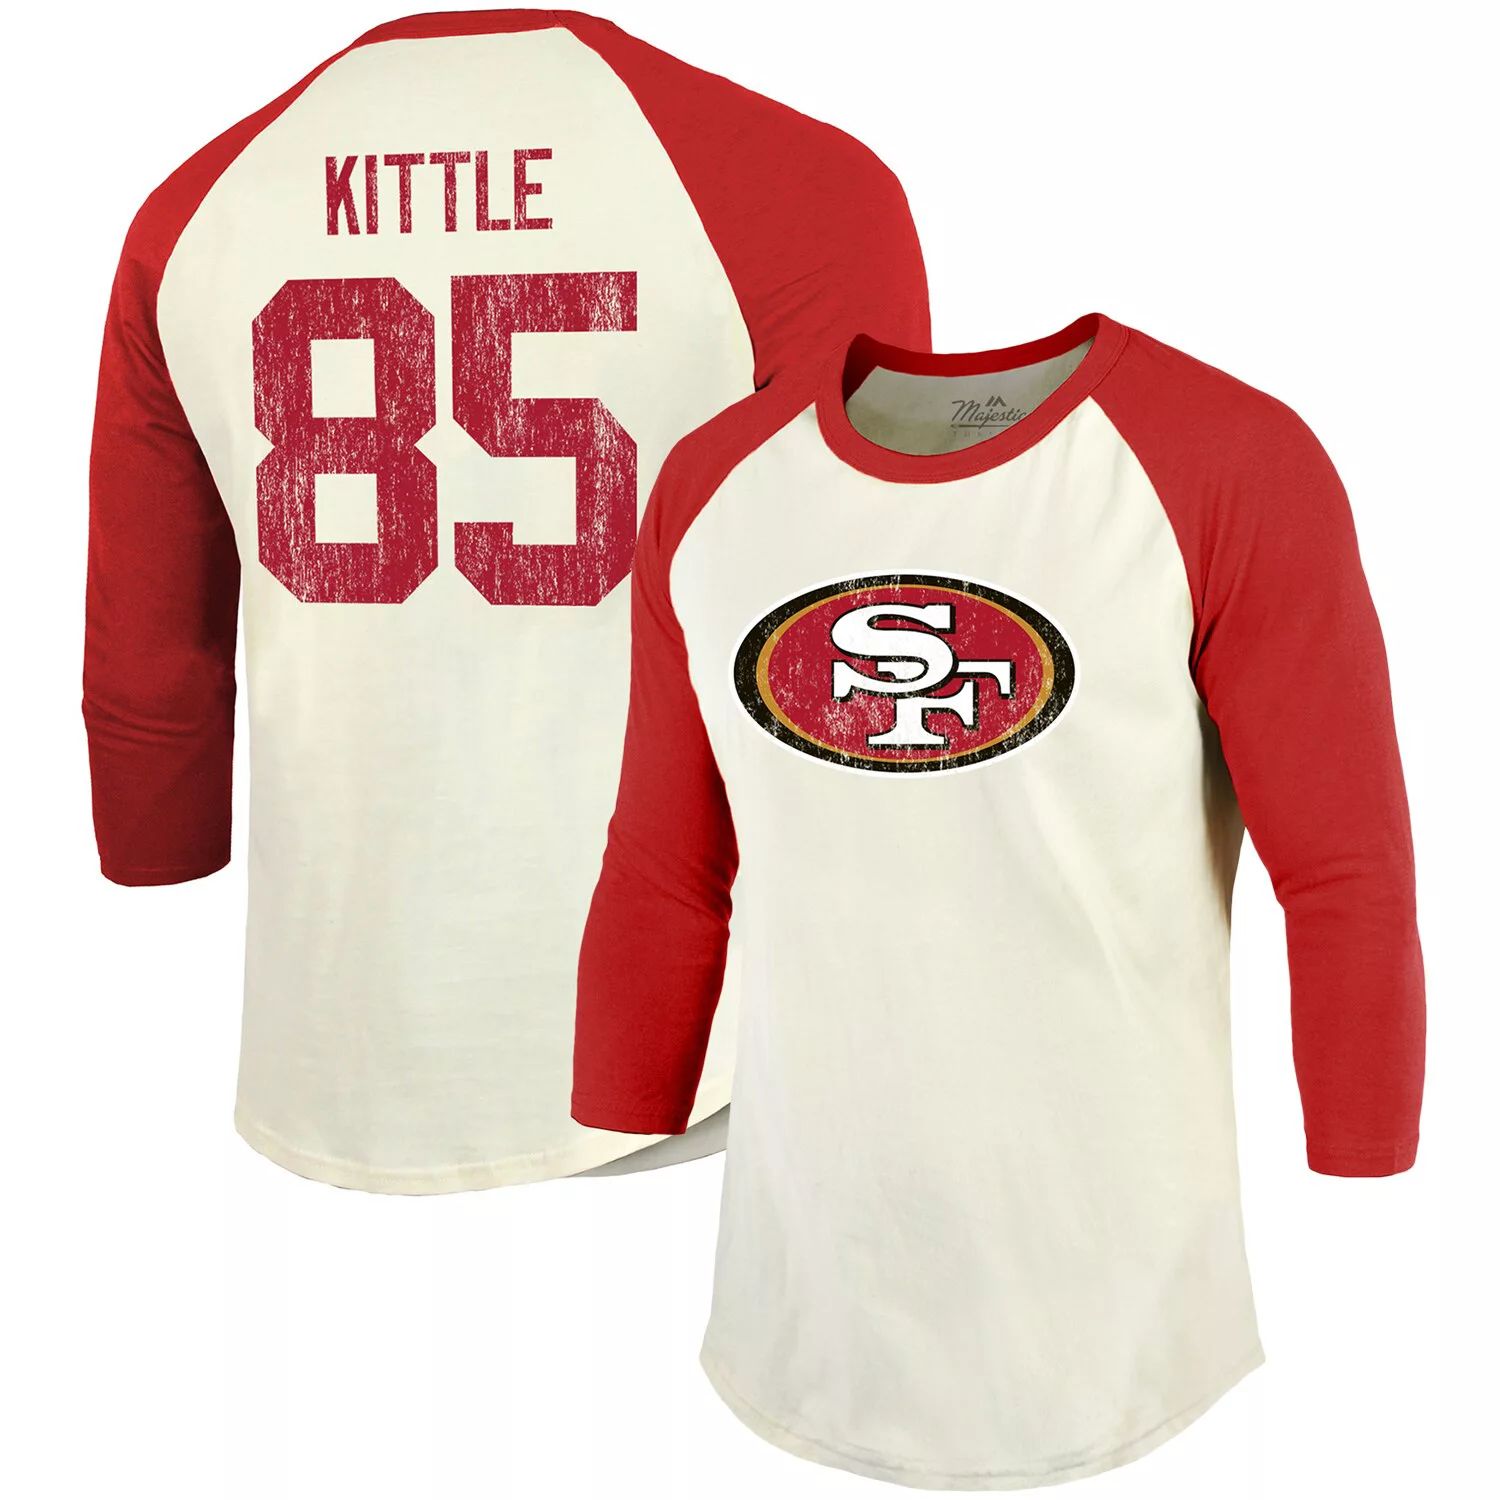 Мужская винтажная футболка Fanatics с брендом George Kittle кремового/алого цвета San Francisco 49ers с именем и номером игрока реглан с рукавами 3/4